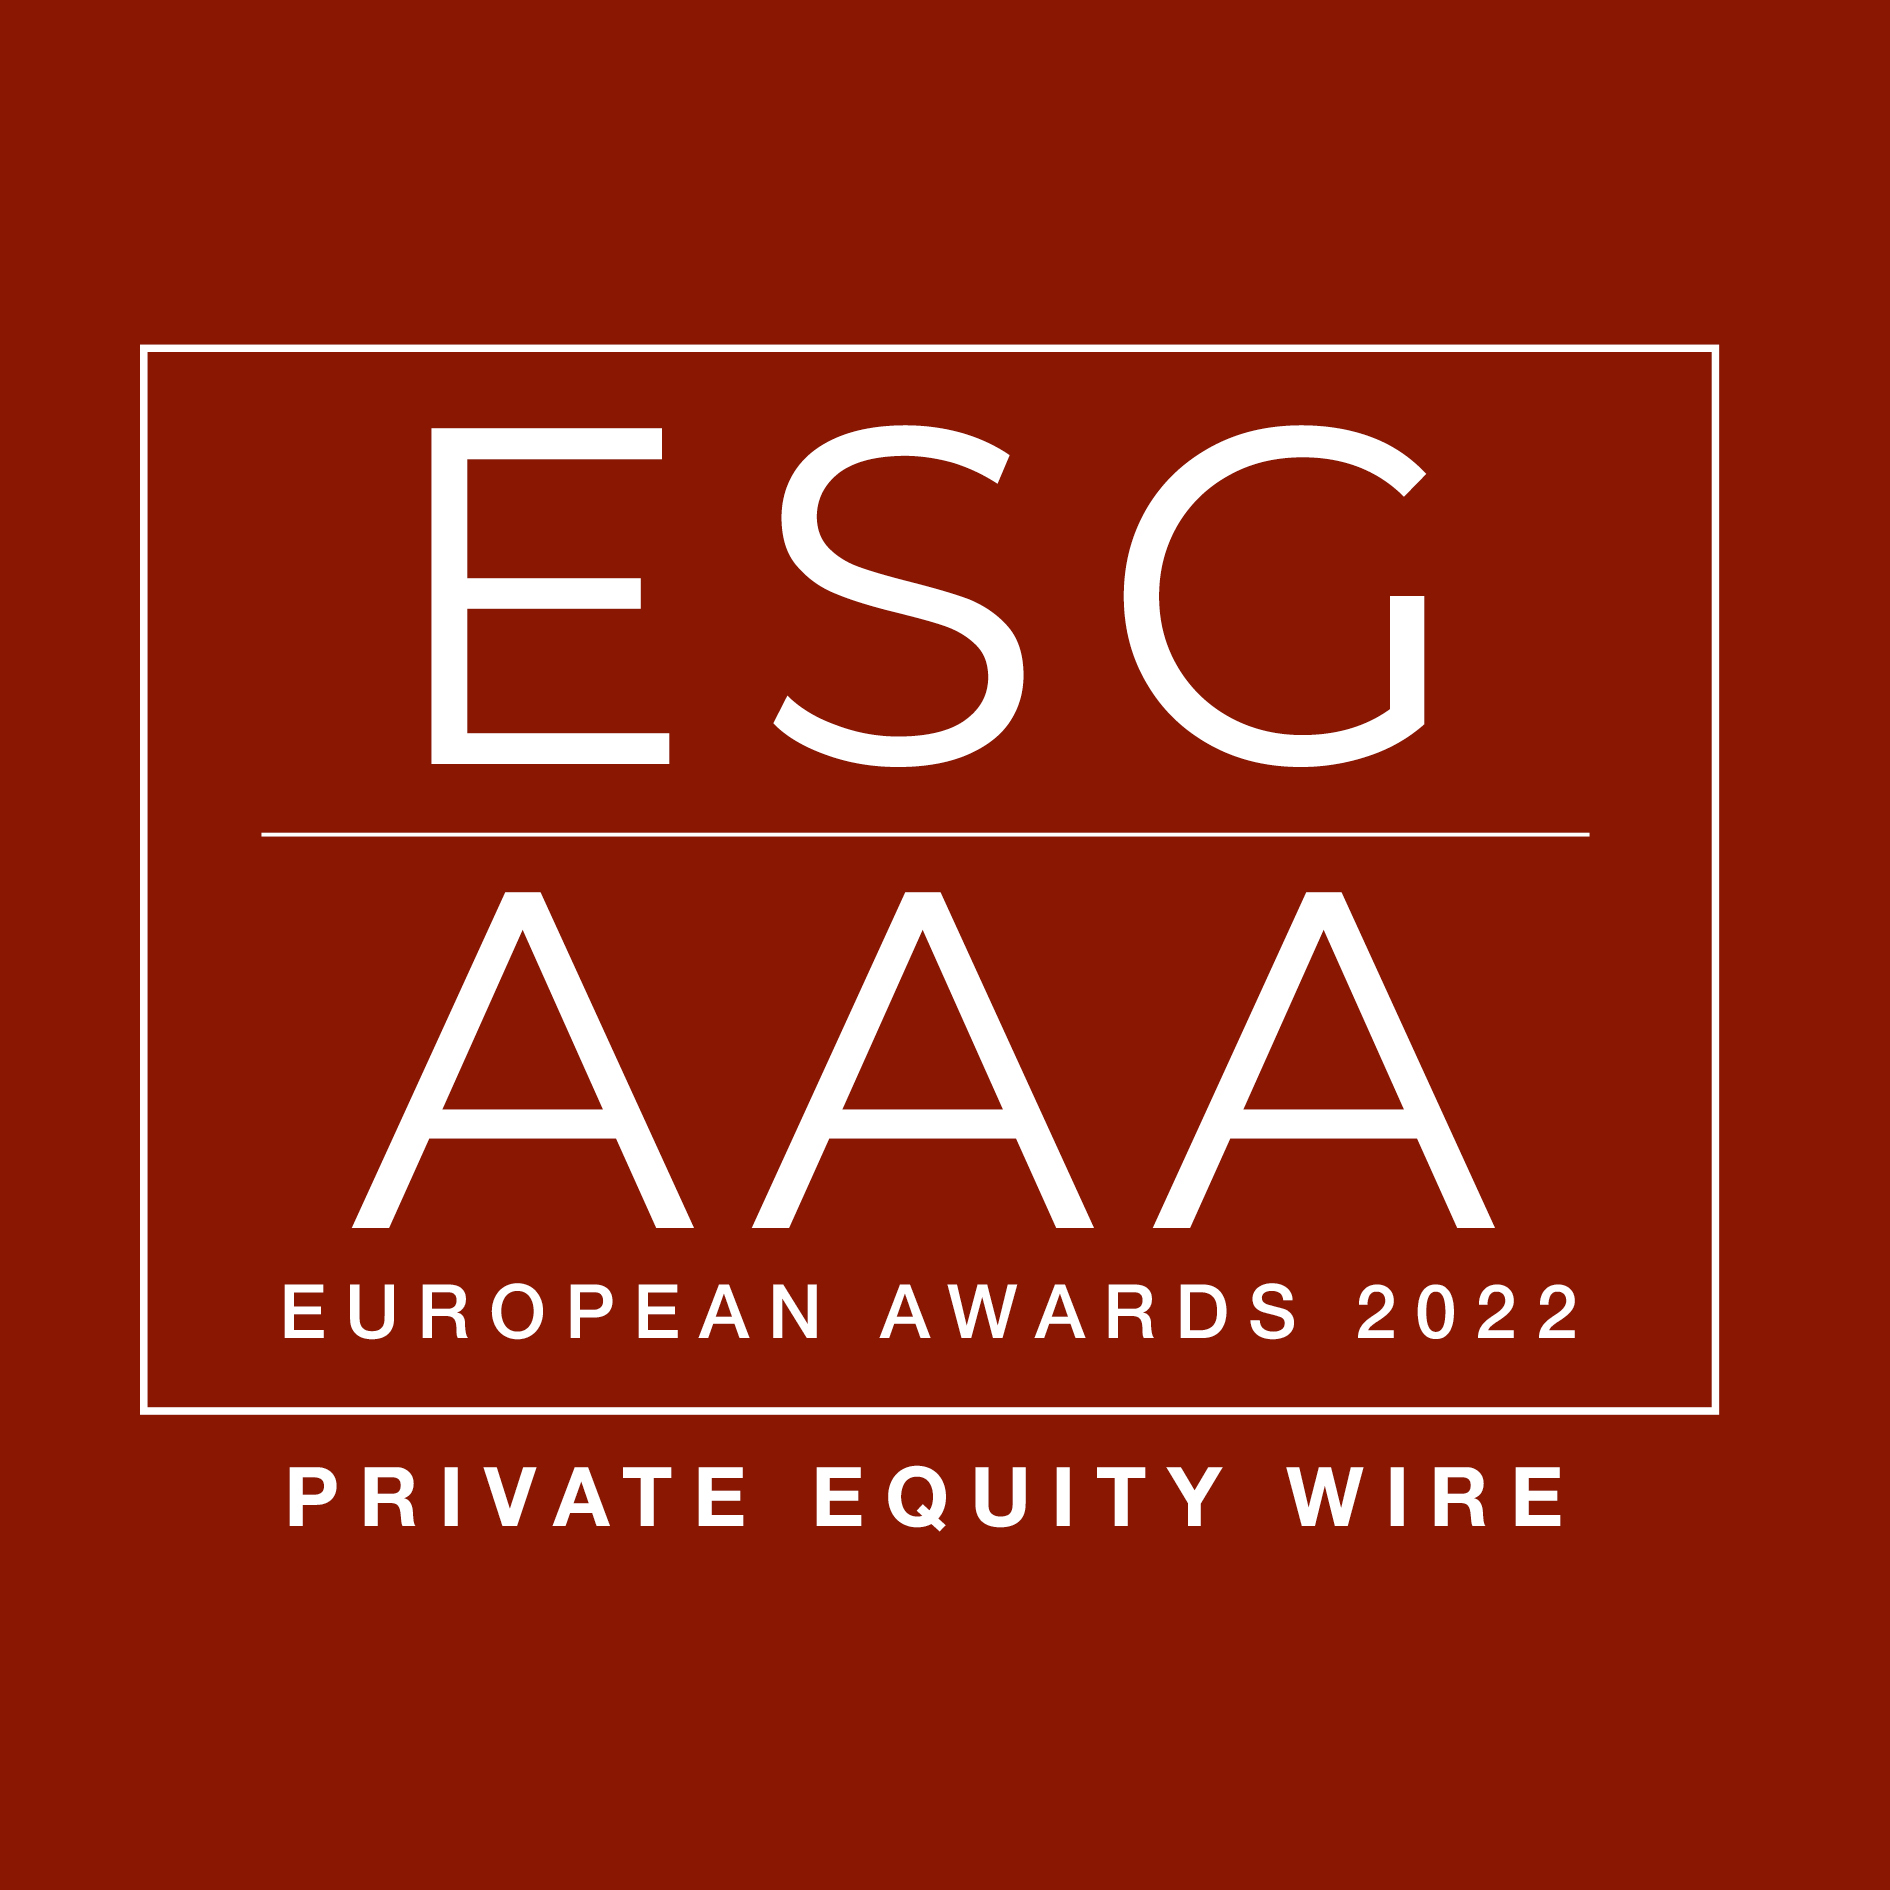 ESG AAA Awards